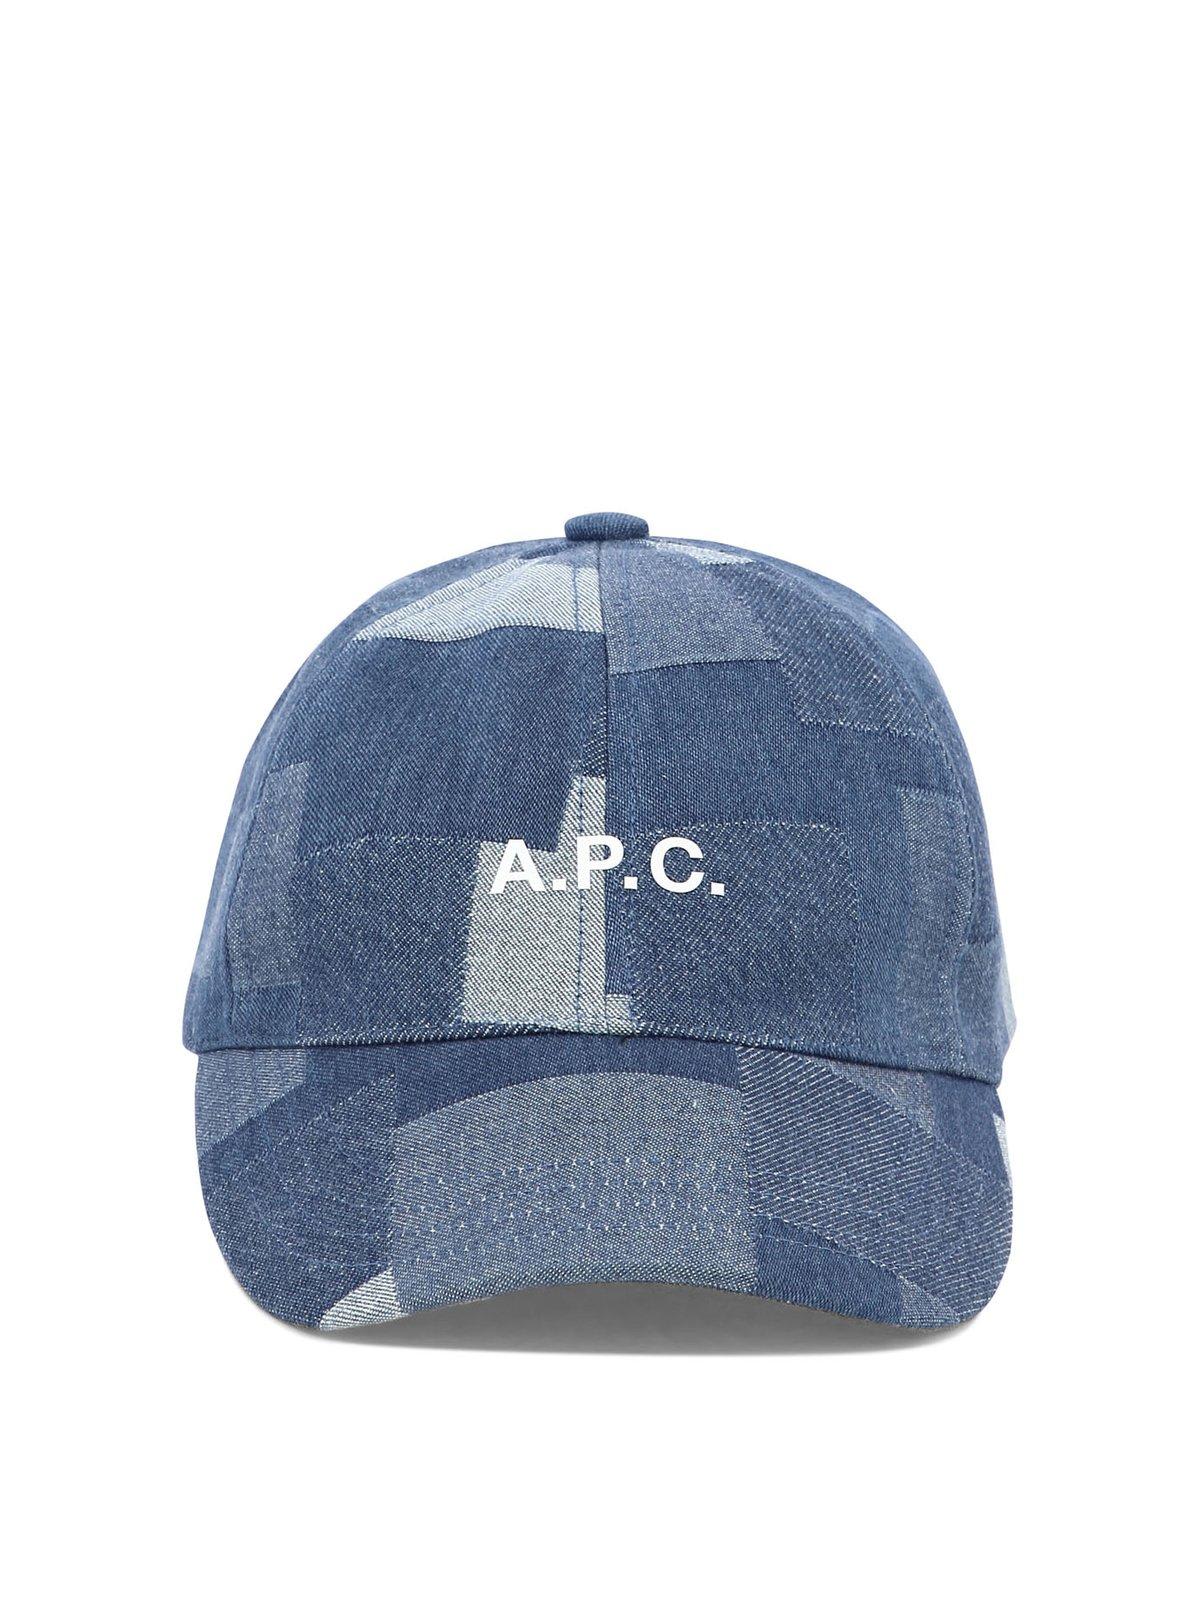 APC LOGO PRINTED DENIM BASEBALL CAP